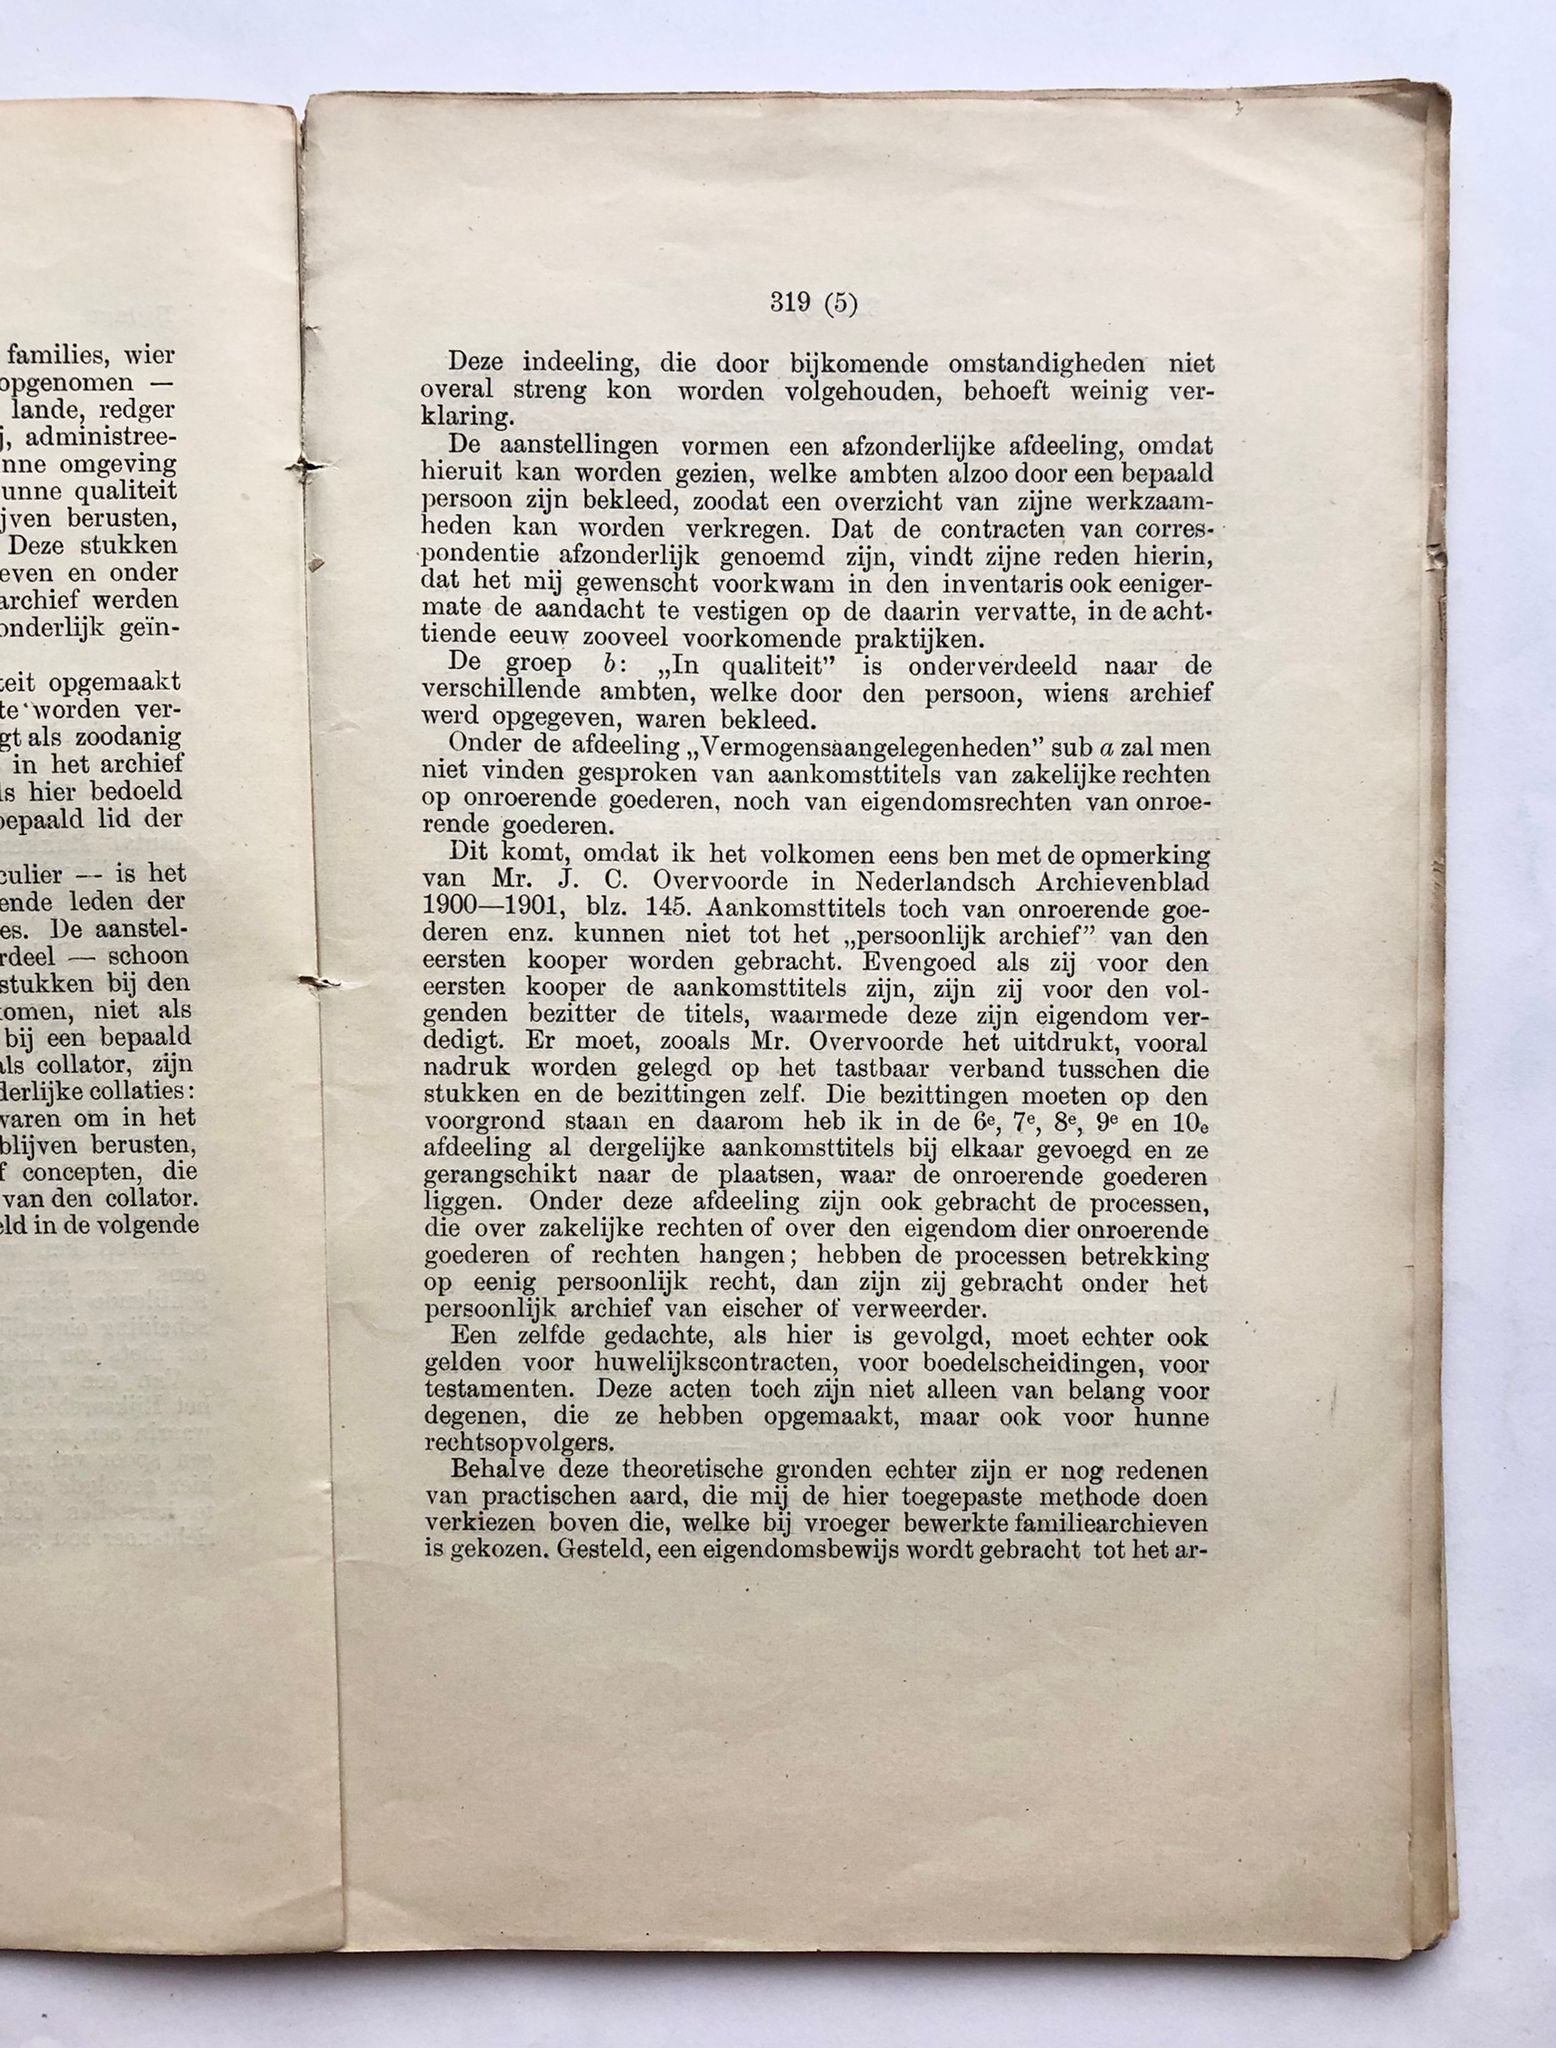 Inventaris van de Huisarchieven Menkema en Dijksterhuis, P. G. Bos, April, 1904, van pagina 317 tot 424, 110 pp.